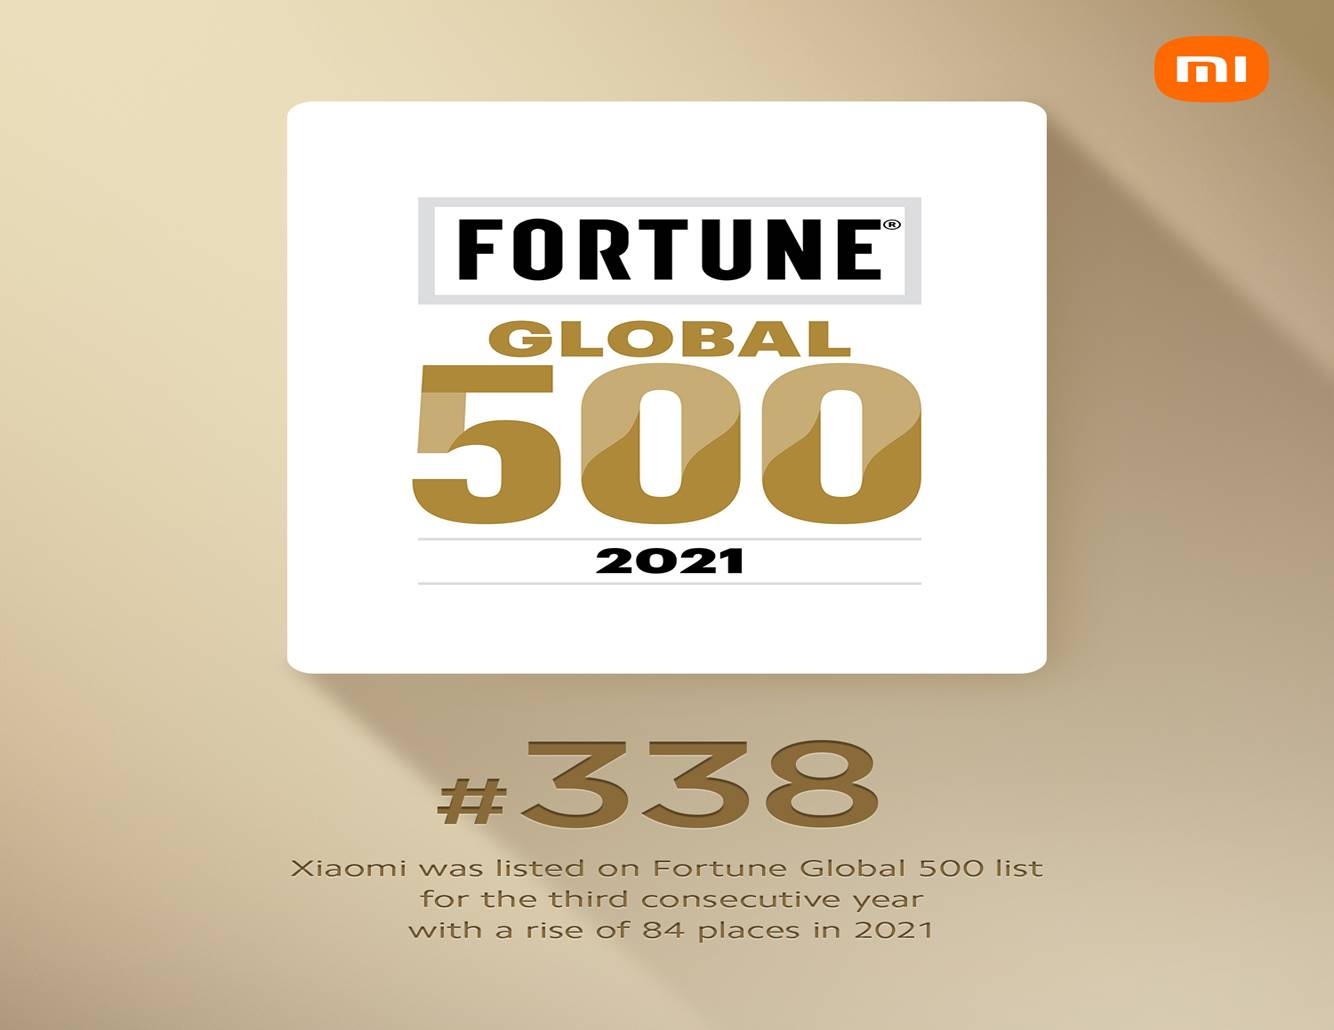 xiaomi thang hang trong danh sach fortune global 500